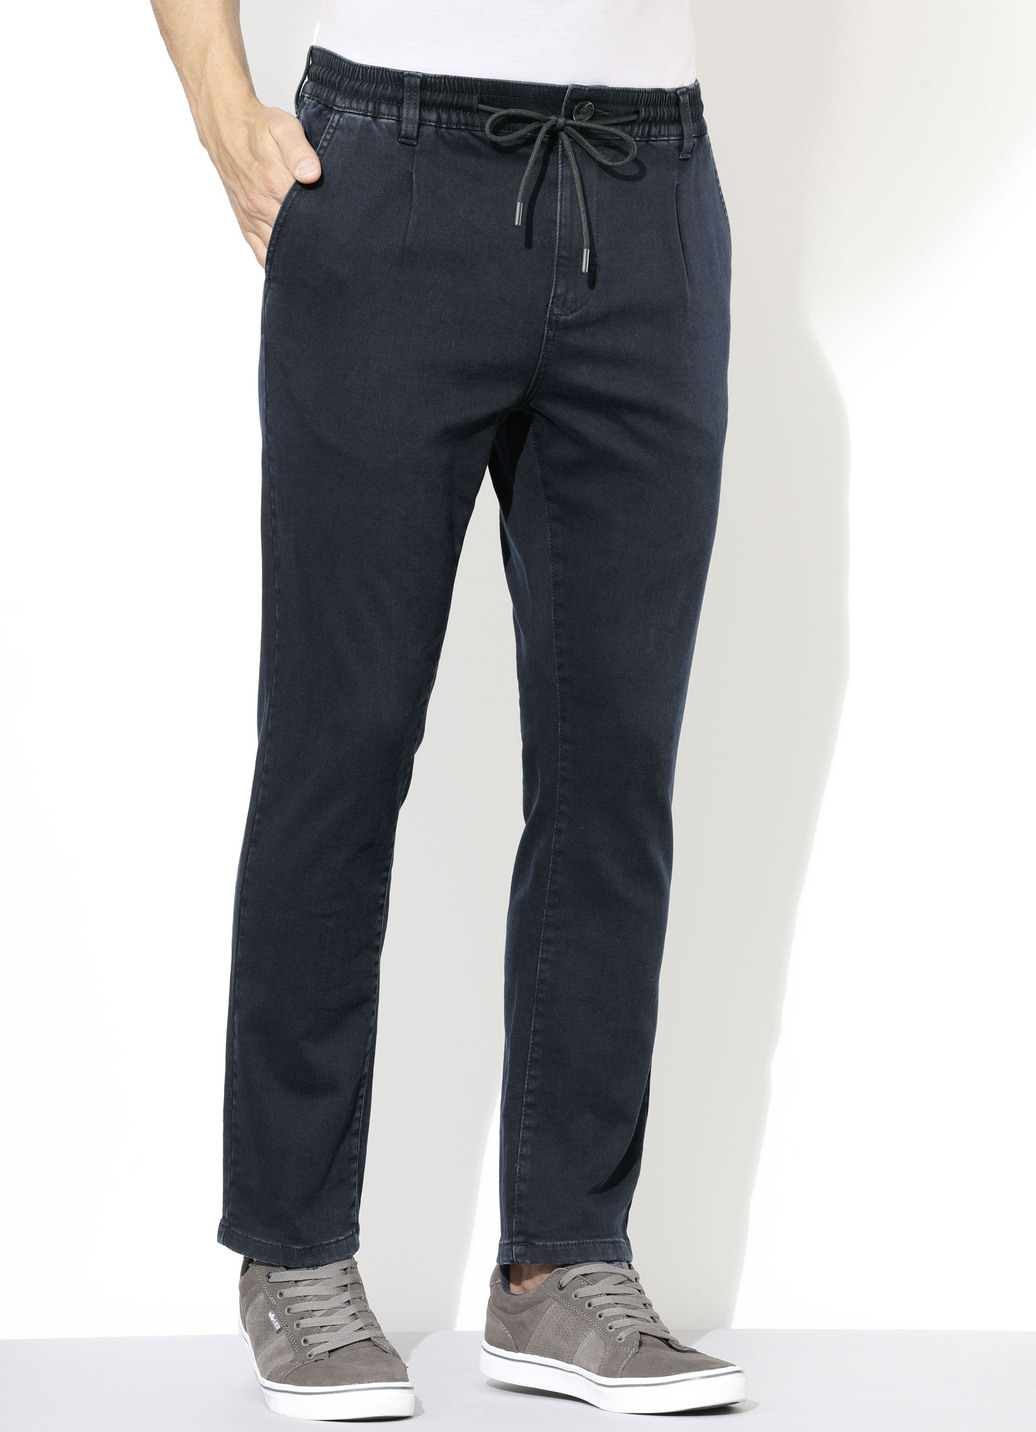 Superstretch-Jeans in 3 Farben, Dunkelblau, Größe 31 von DANNECKER